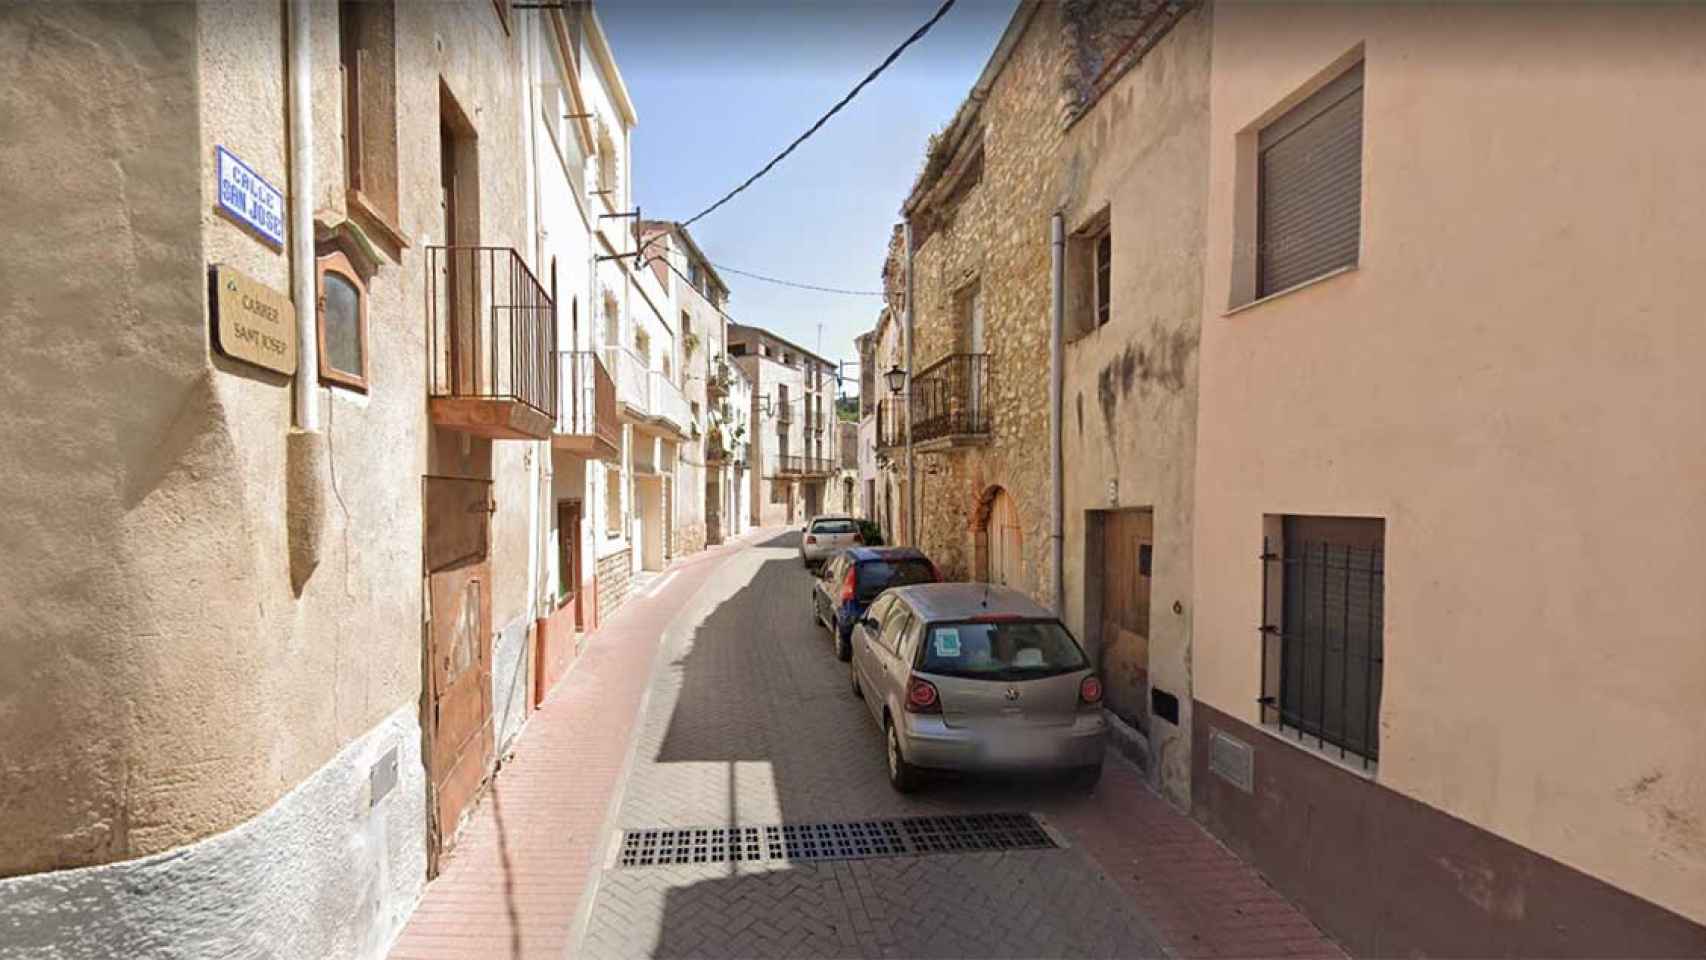 Calle Sant Josep de Godall, donde han encontrado a un matrimonio muerto en su casa por una inhalación de monóxido de carbono / GOOGLE MAPS